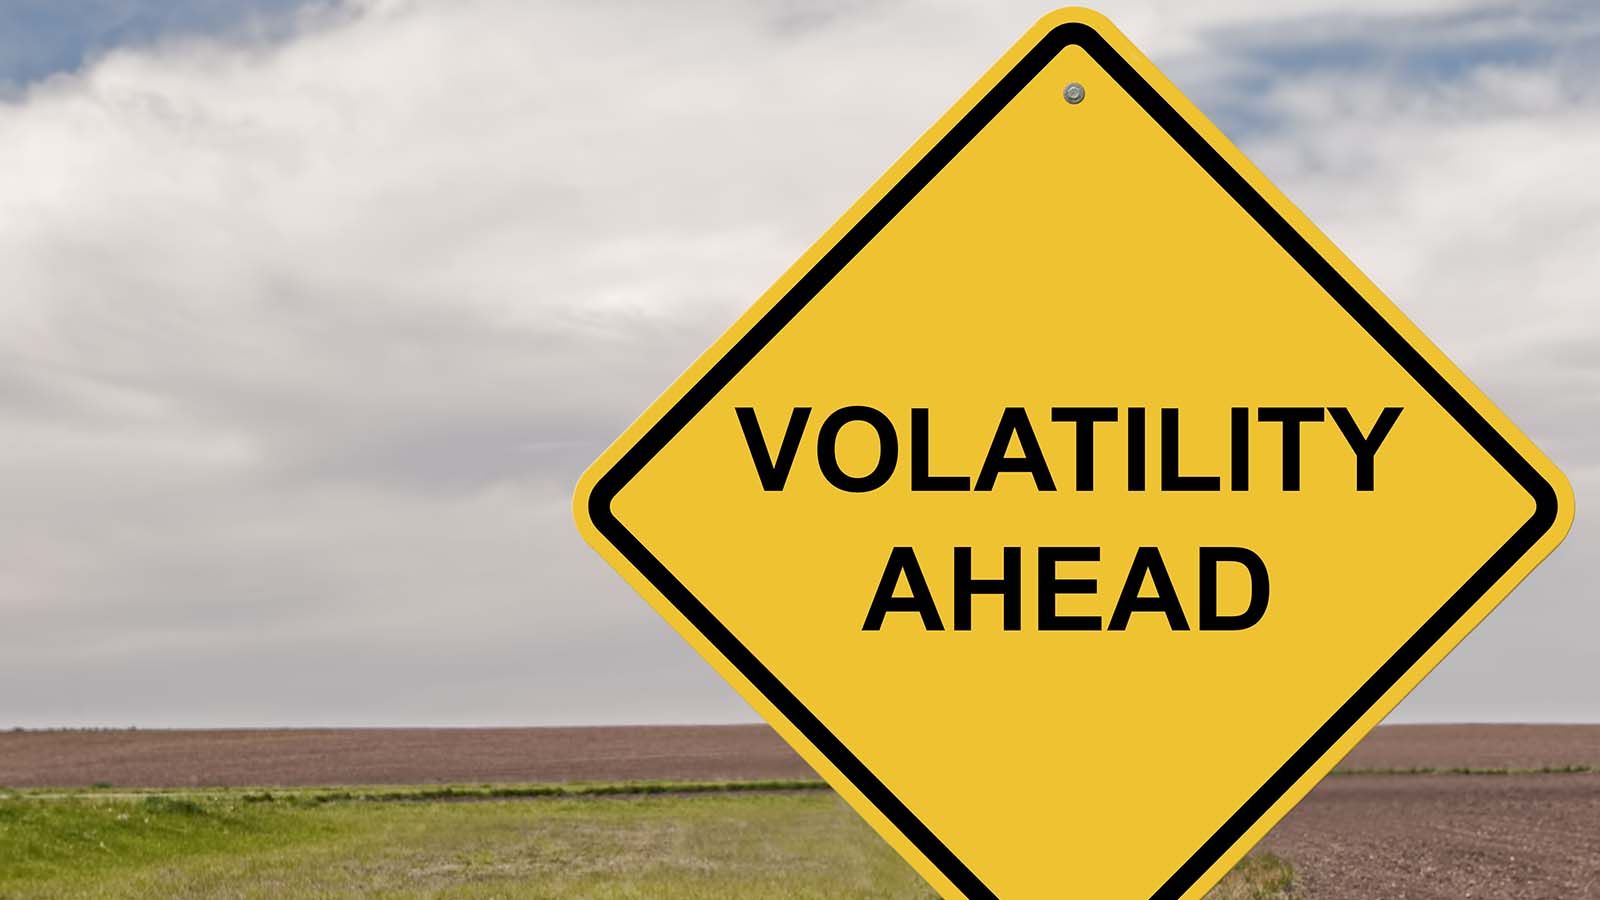 Warning: volatility ahead!